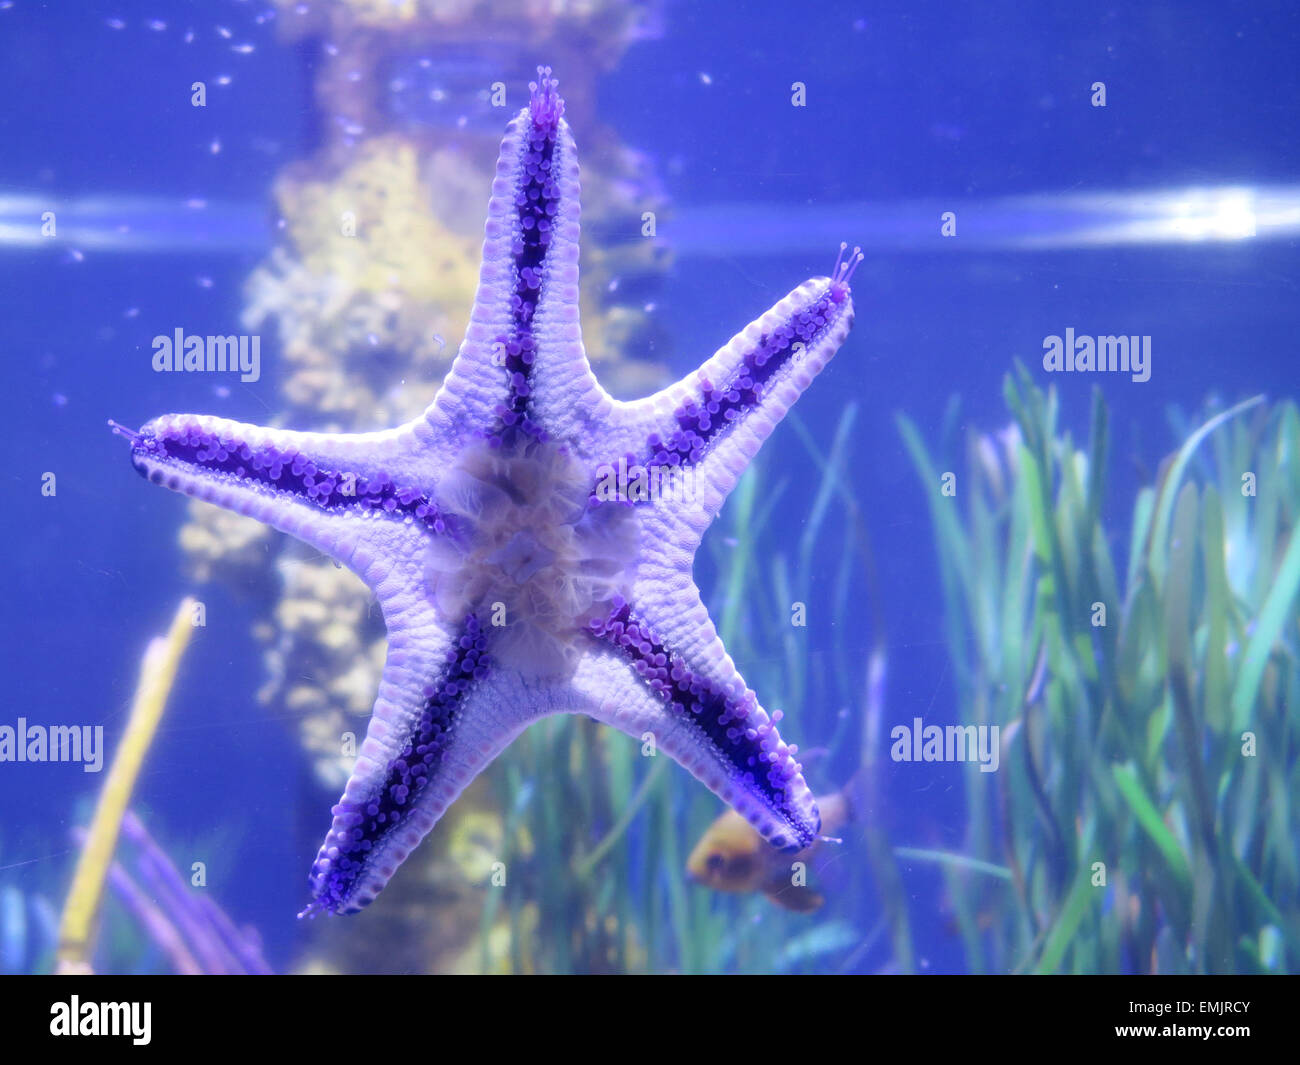 Starfish on fishbowl Stock Photo